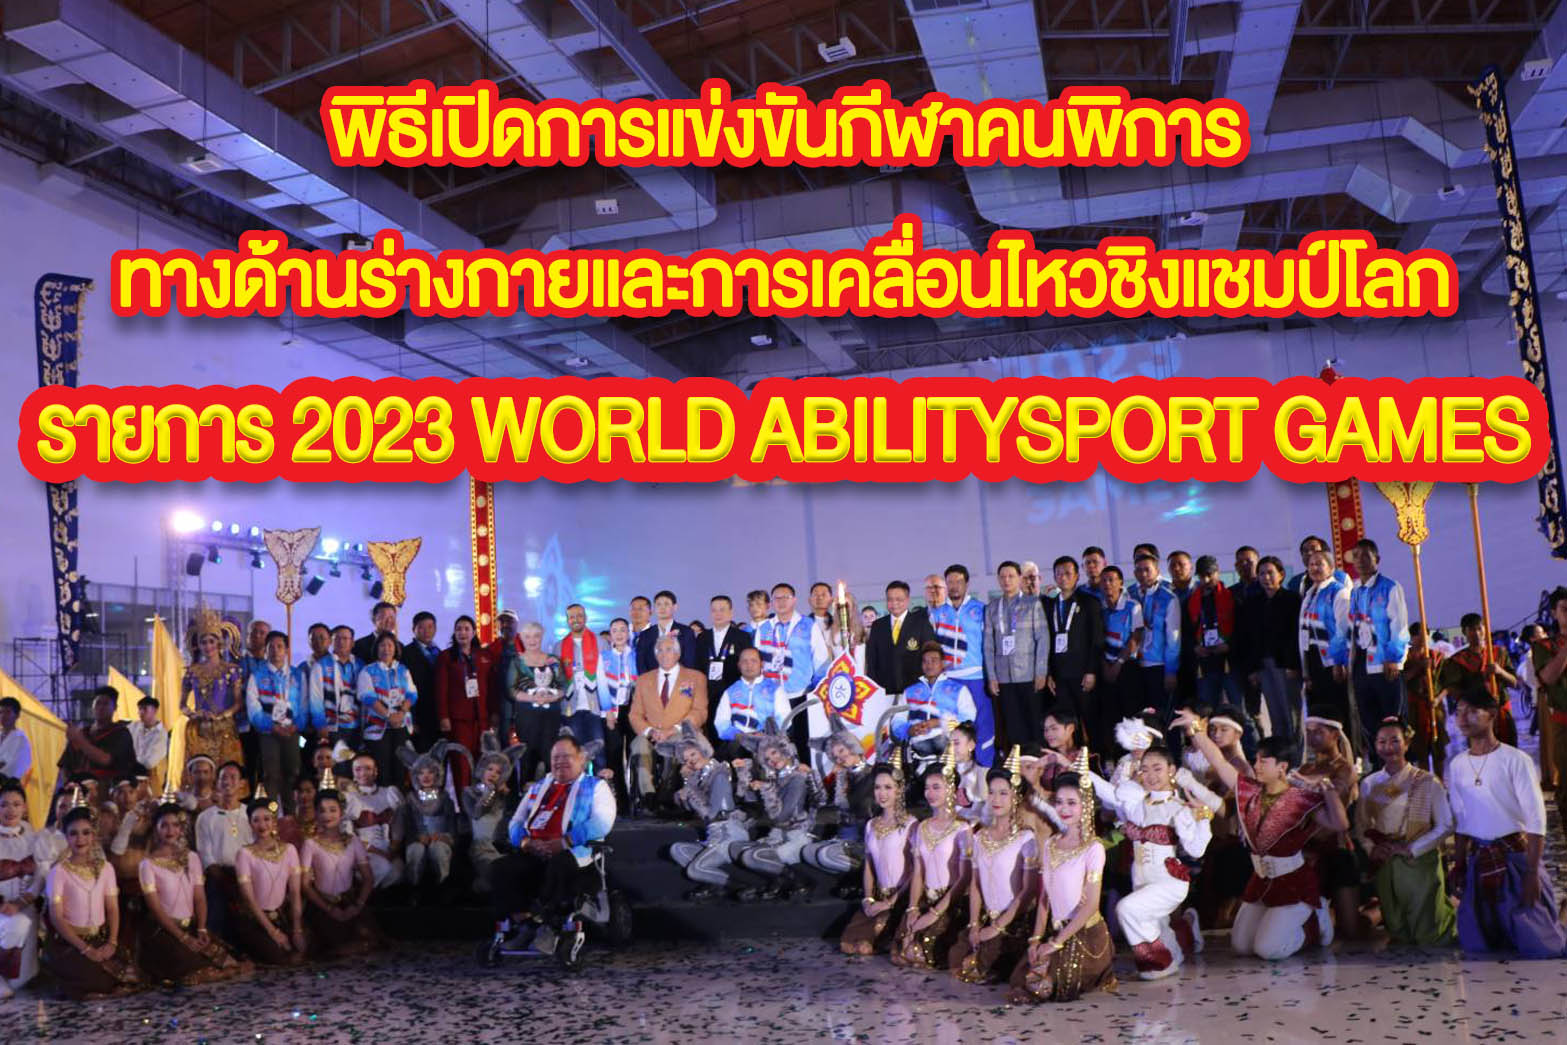 พิธีเปิดการแข่งขันกีฬาคนพิการทางด้านร่างกายและการเคลื่อนไหวชิงแชมป์โลก รายการ 2023 WORLD ABILITYSPORT GAMES